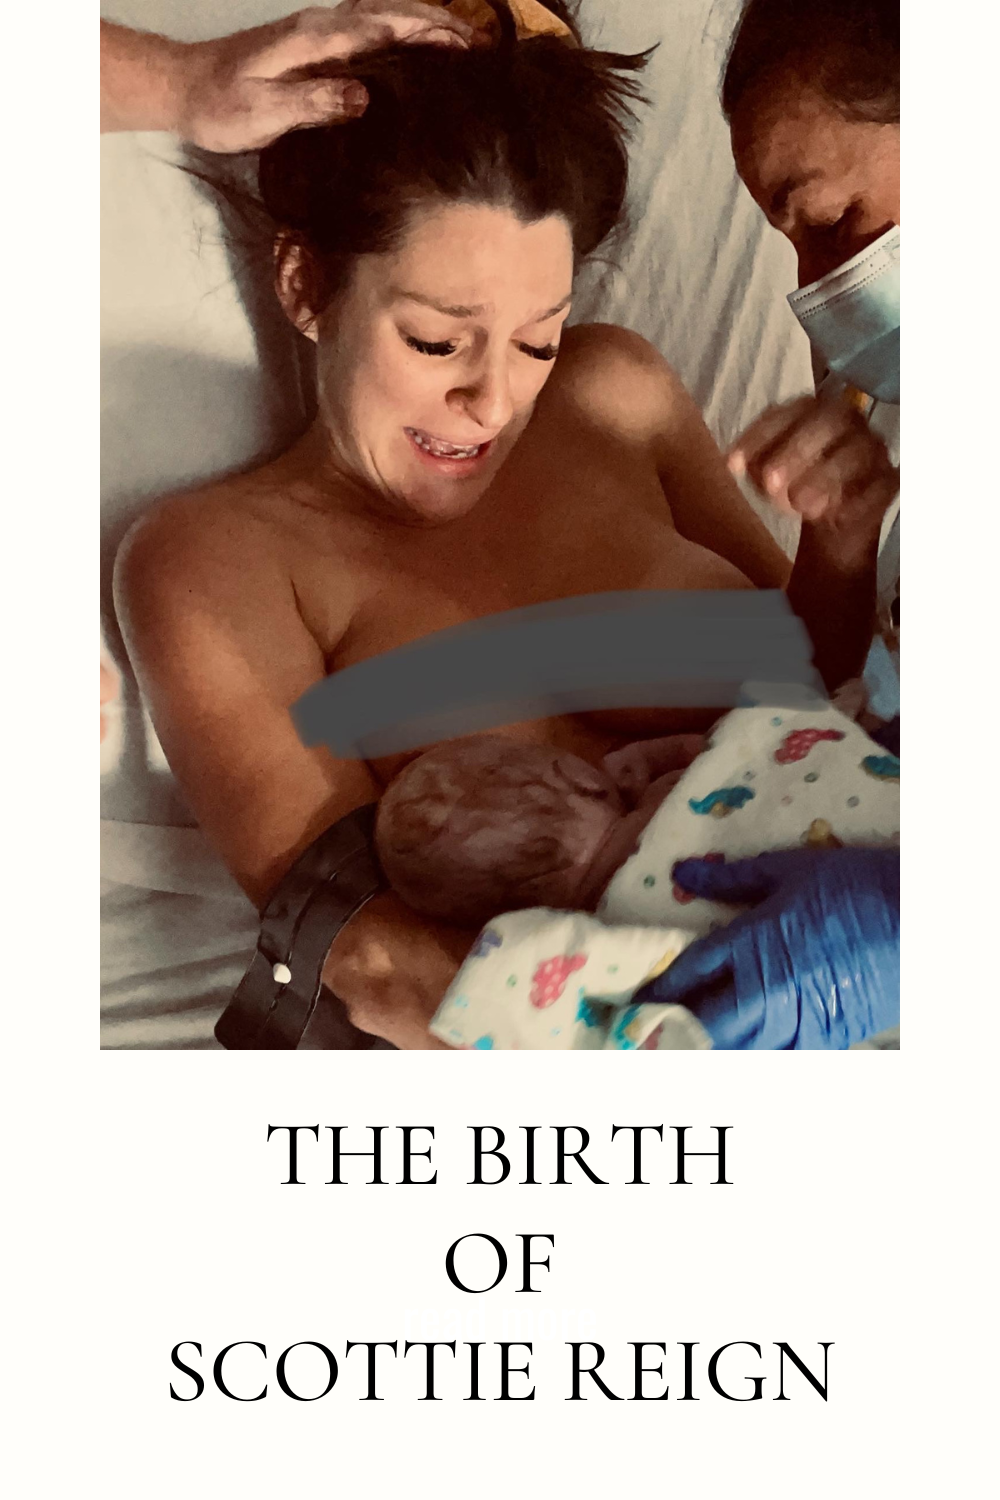 Scottie Reign's Birth Story